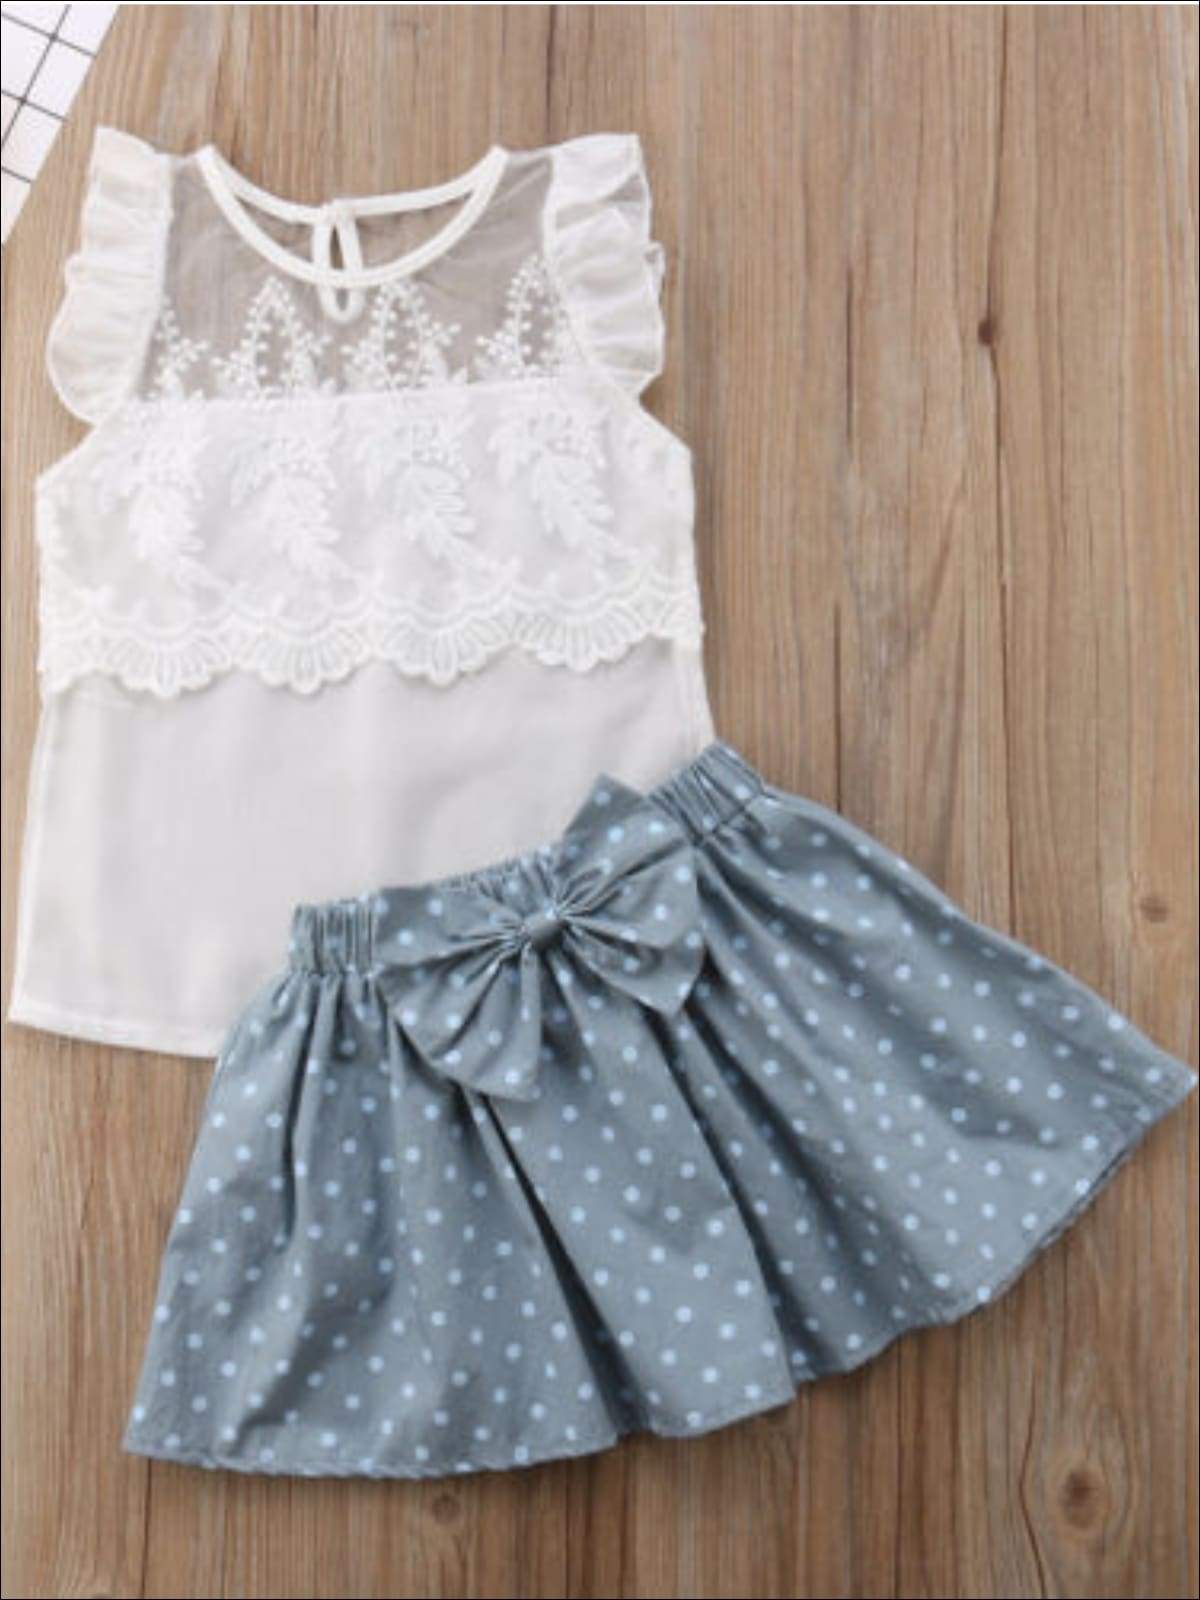 Girls White Lace Top & Polka Dot Skirt Set - Girls Spring Casual Set